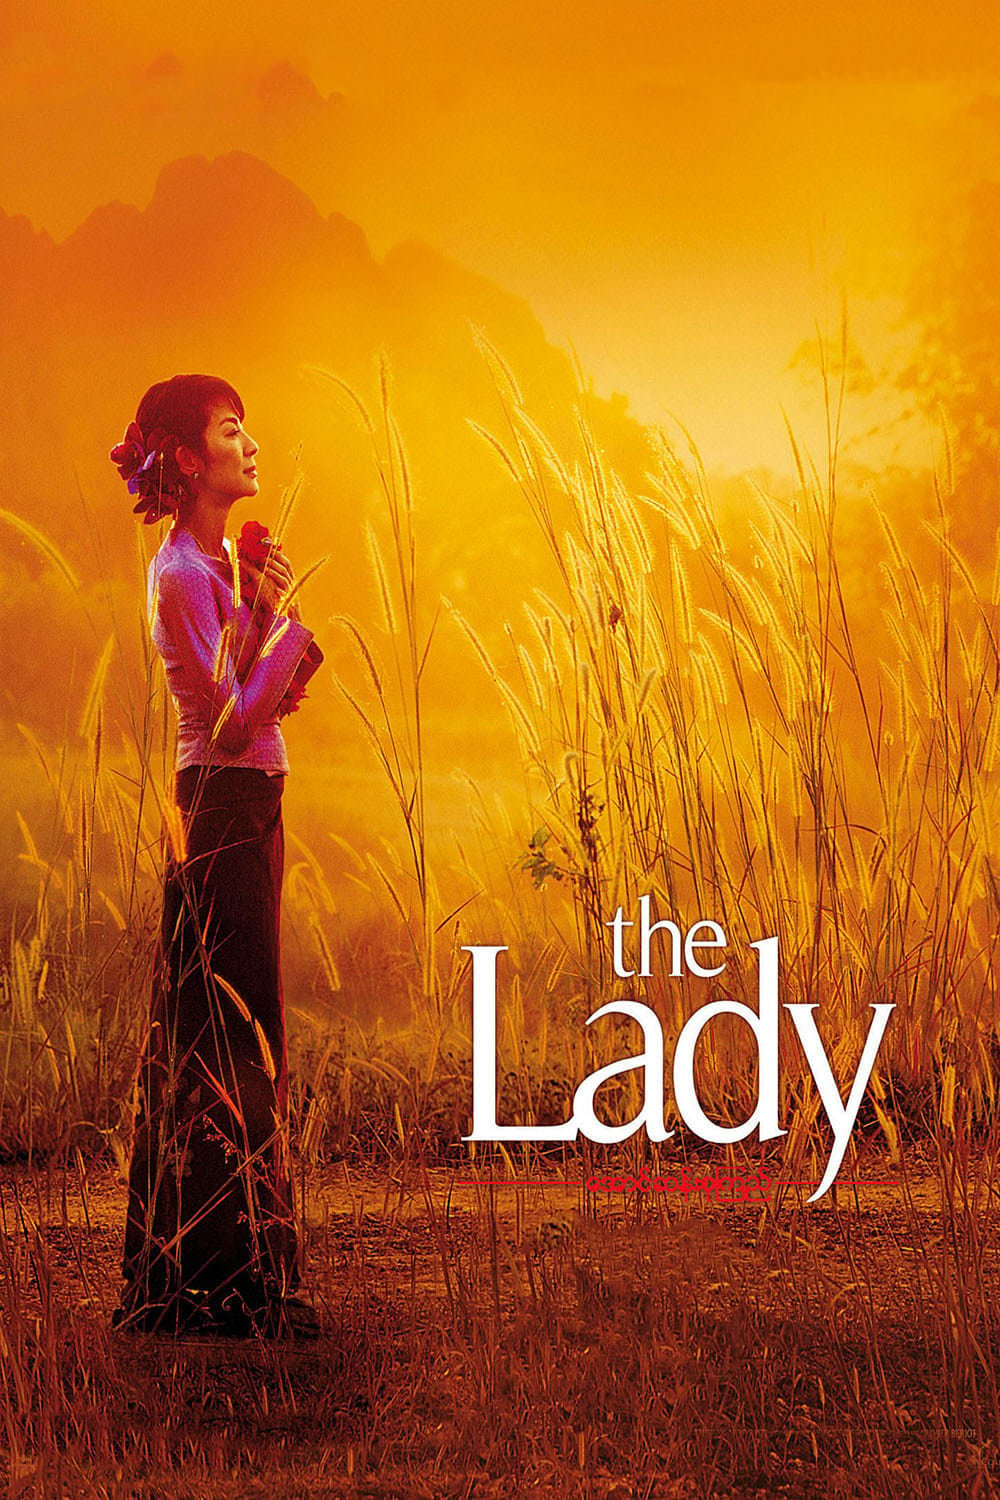 The Lady - Um Coração Dividido